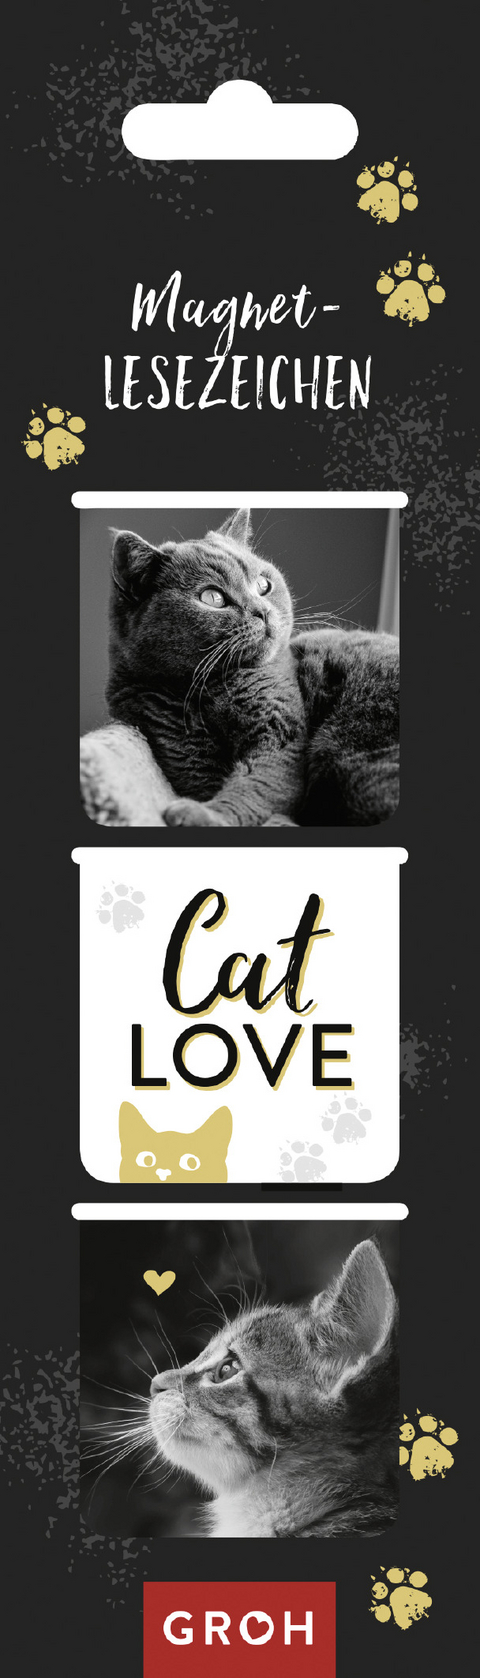 Magnetlesezeichen Cat love - 